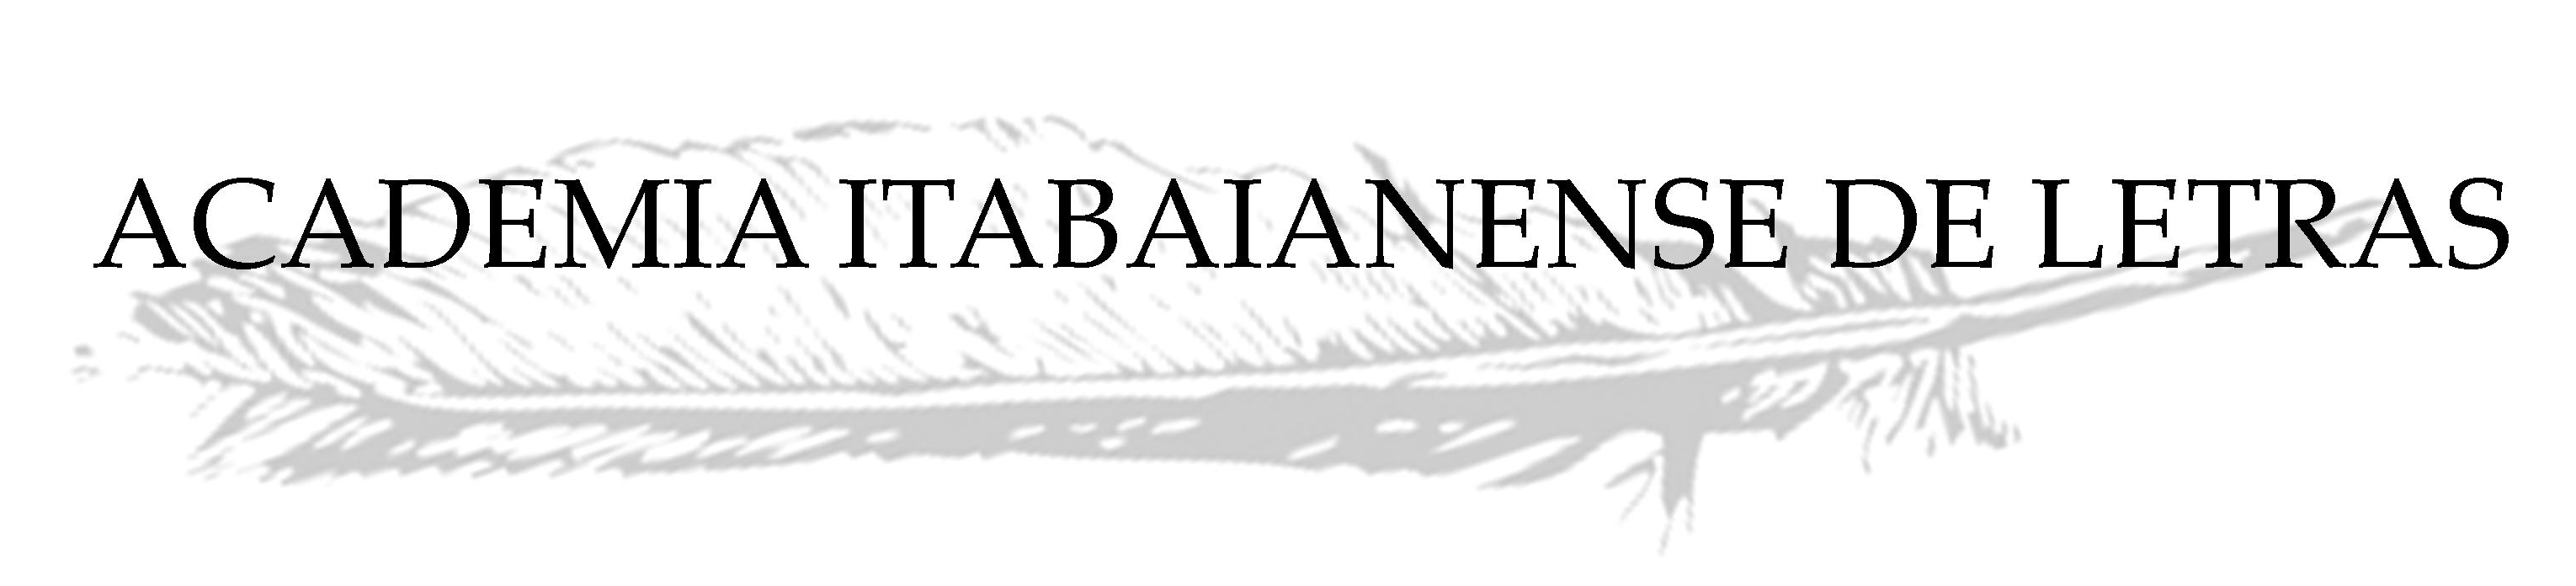 Academia Itabaianense de Letras